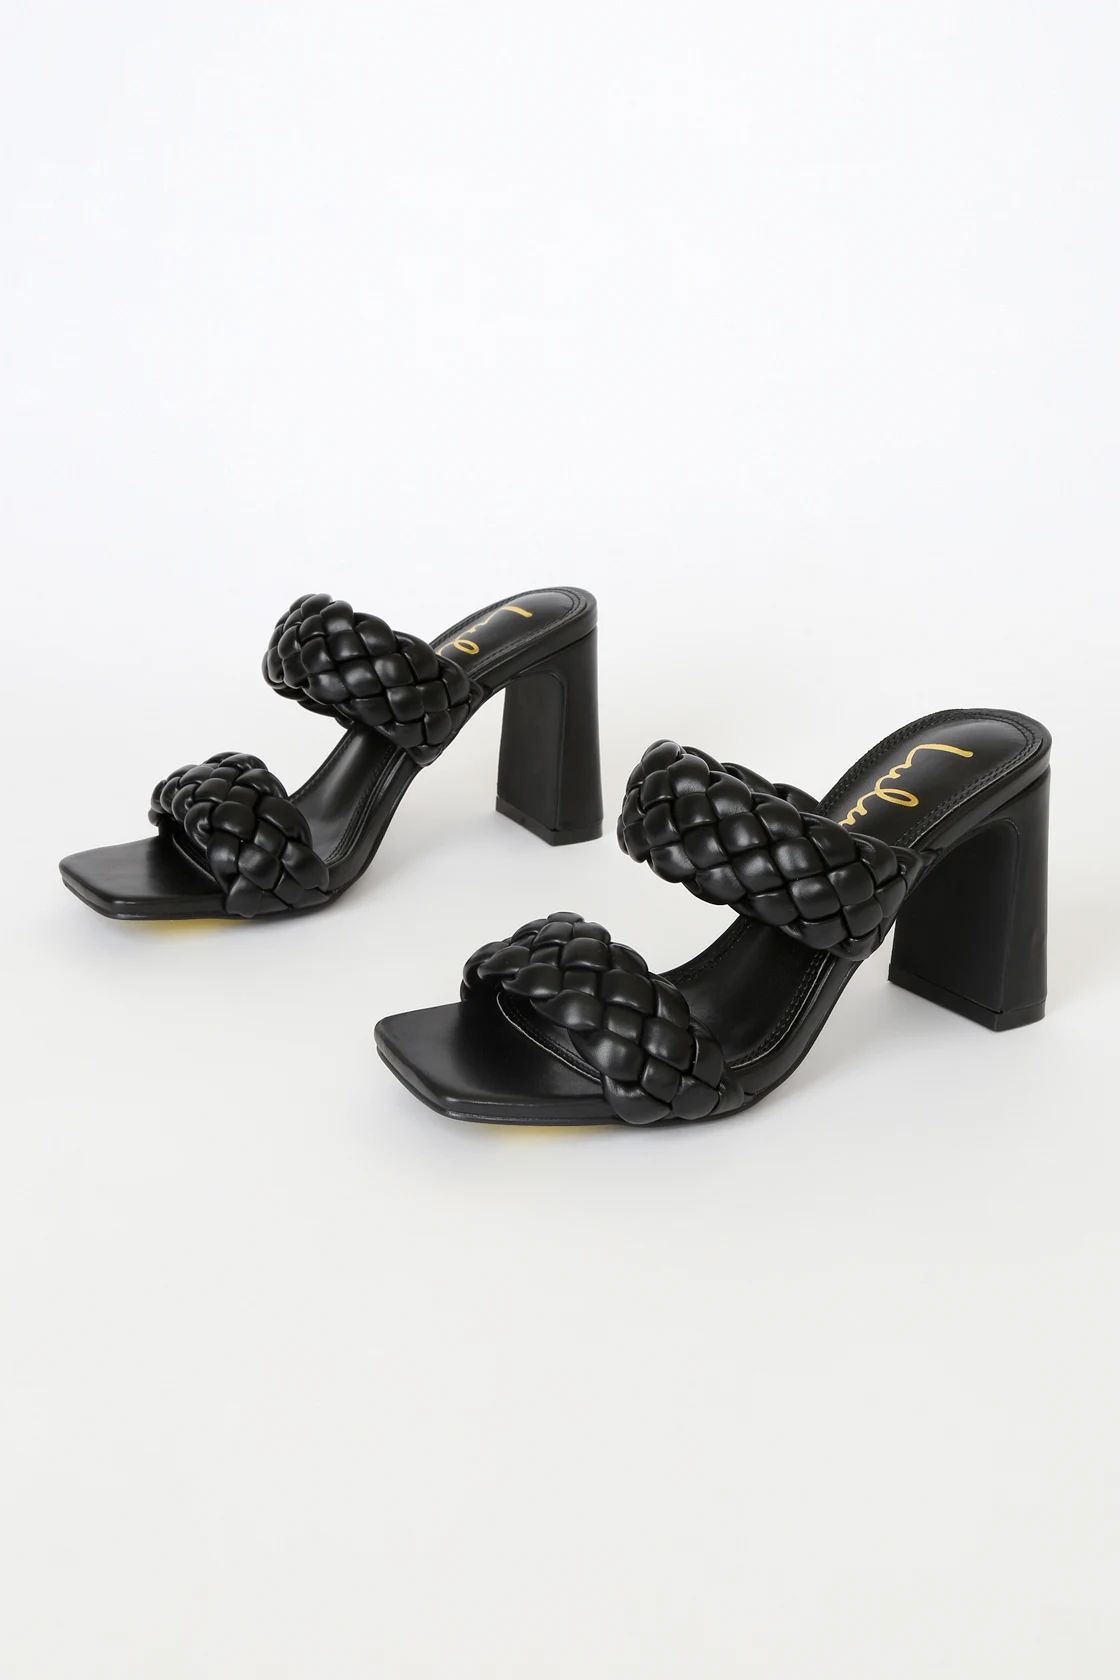 Louella Black High Heel Sandals | Lulus (US)